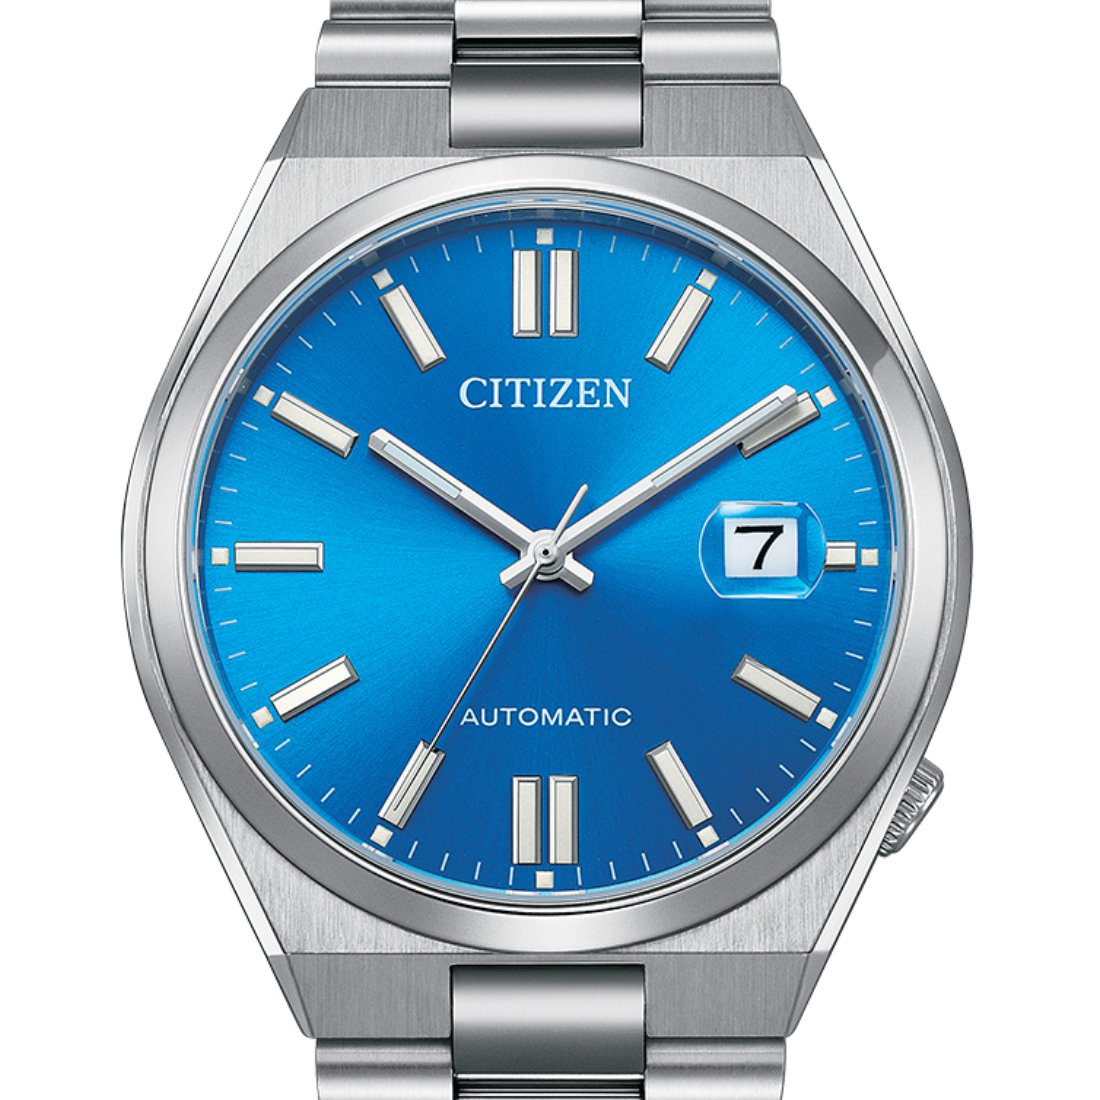 Citizen NJ0158-89L Pantone Glowing Blue Dial Automatic Mens Watch -Citizen